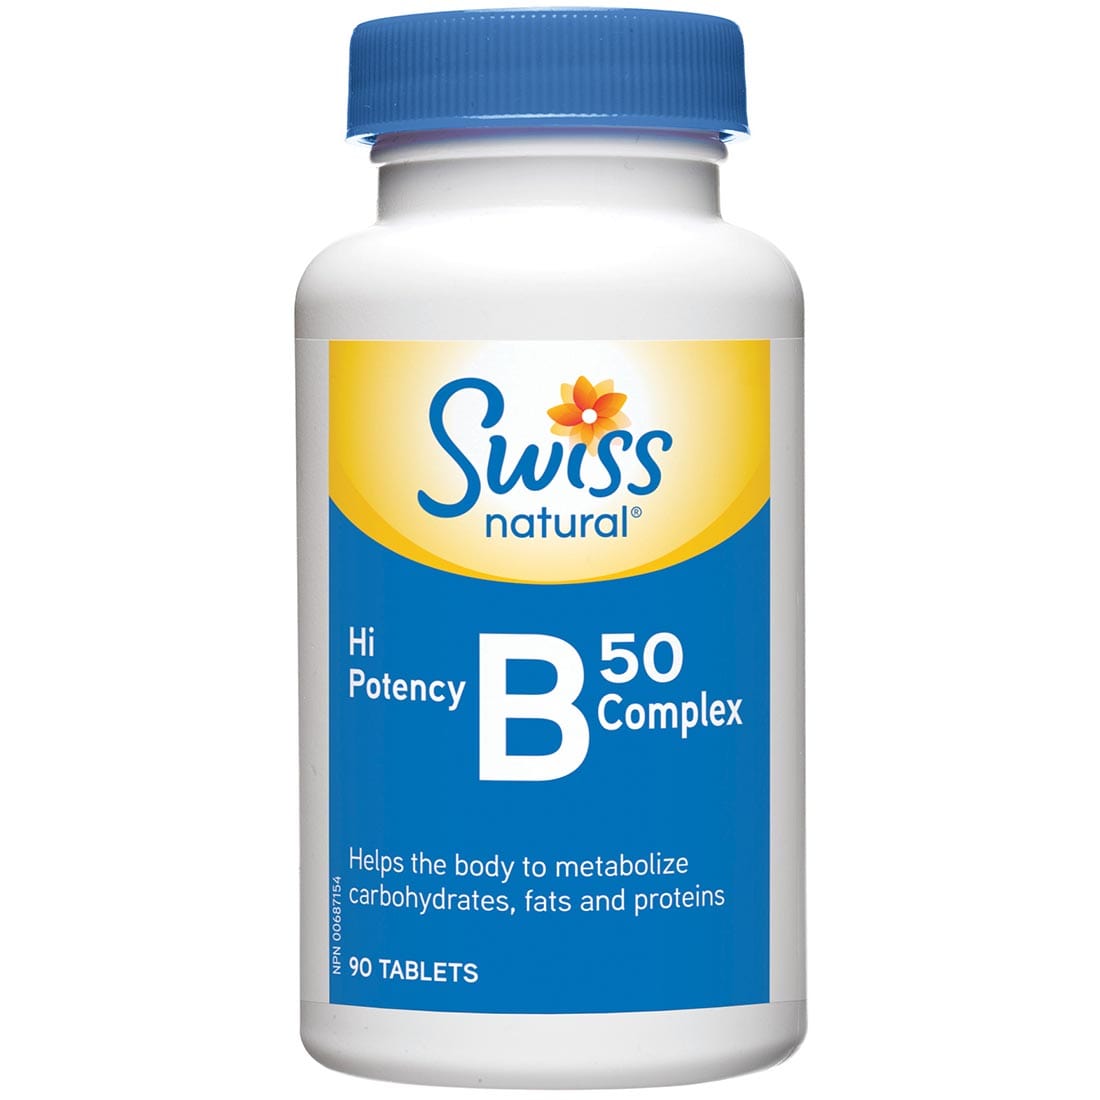 Swiss Natural B50 Complex Hi Potency, 90 Tablets